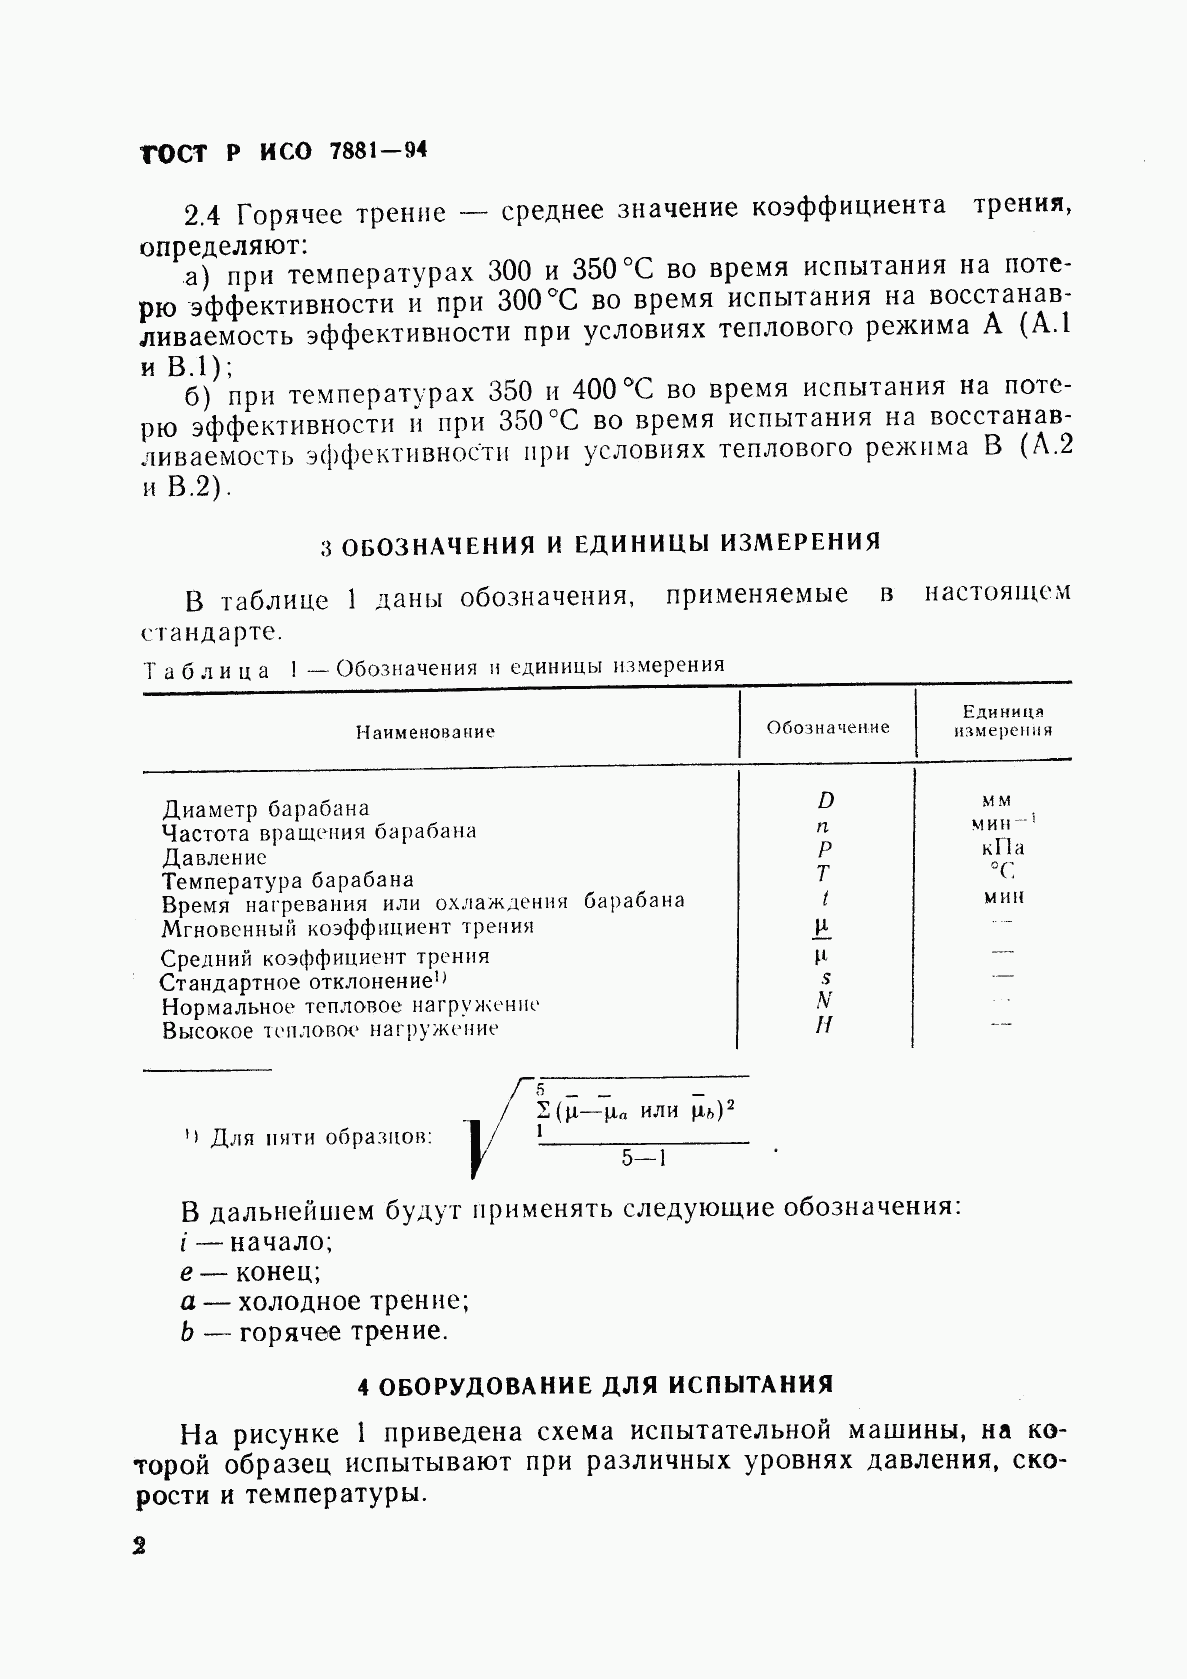 ГОСТ Р ИСО 7881-94, страница 5